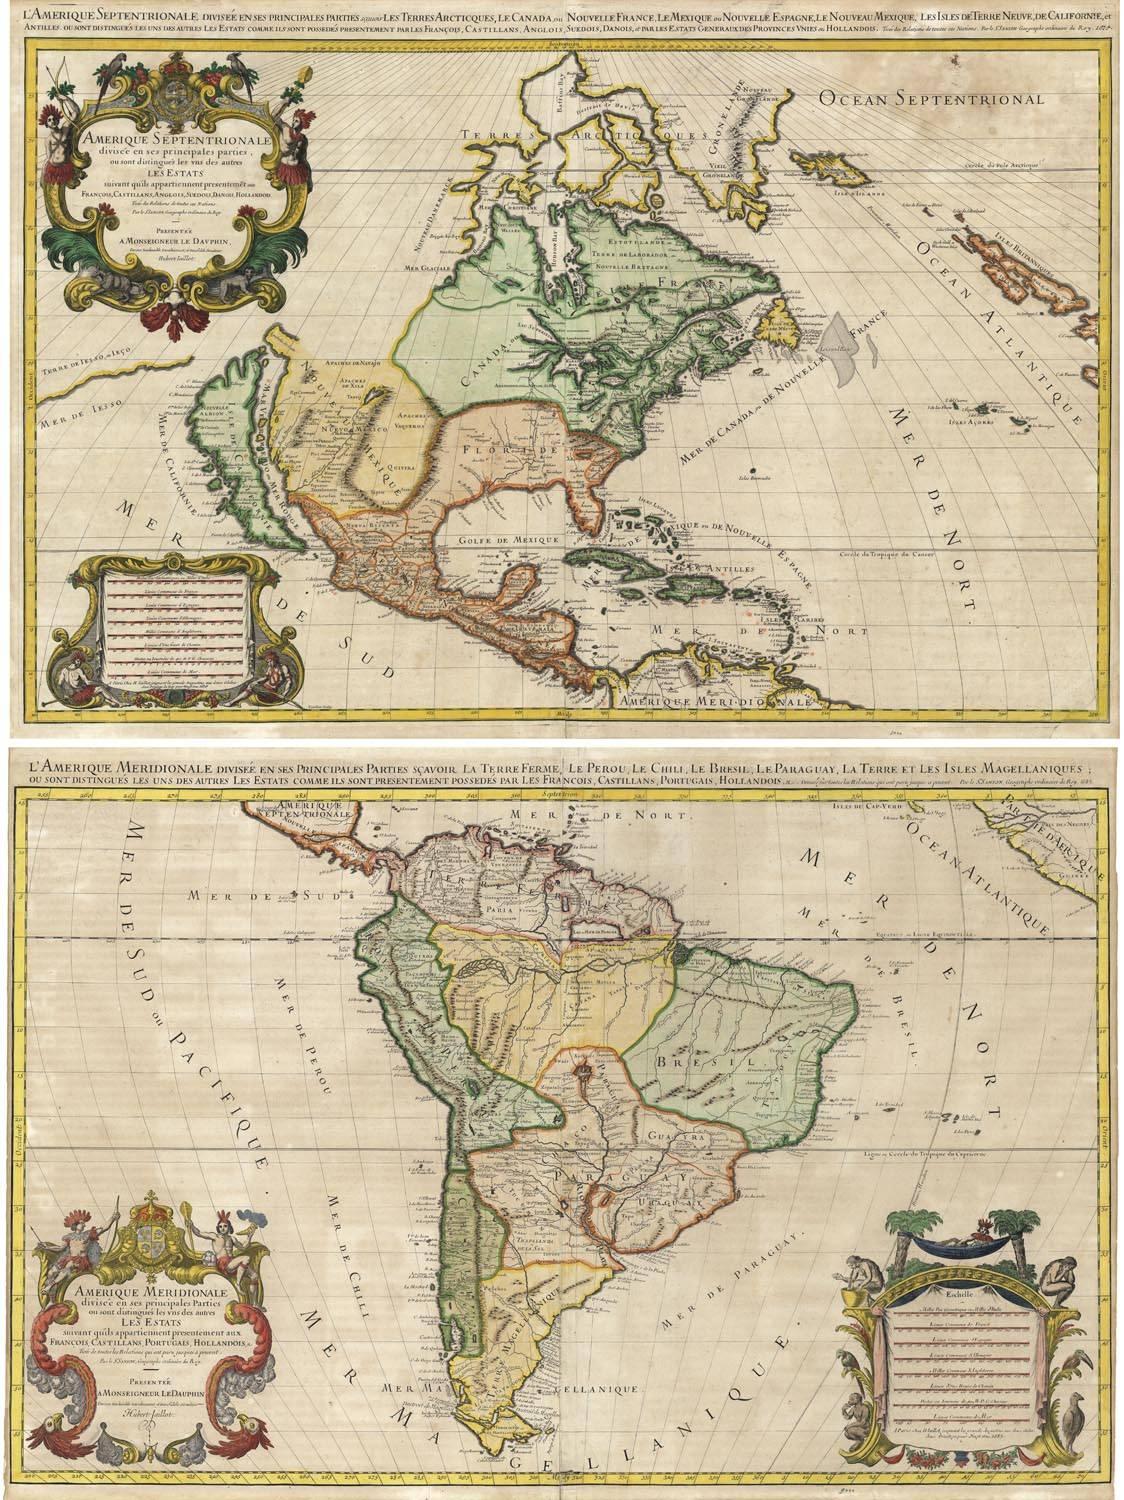 L'Amerique Septentrionale.  L'Amerique Meridionale.  - Print by Alexis Hubert Jaillot